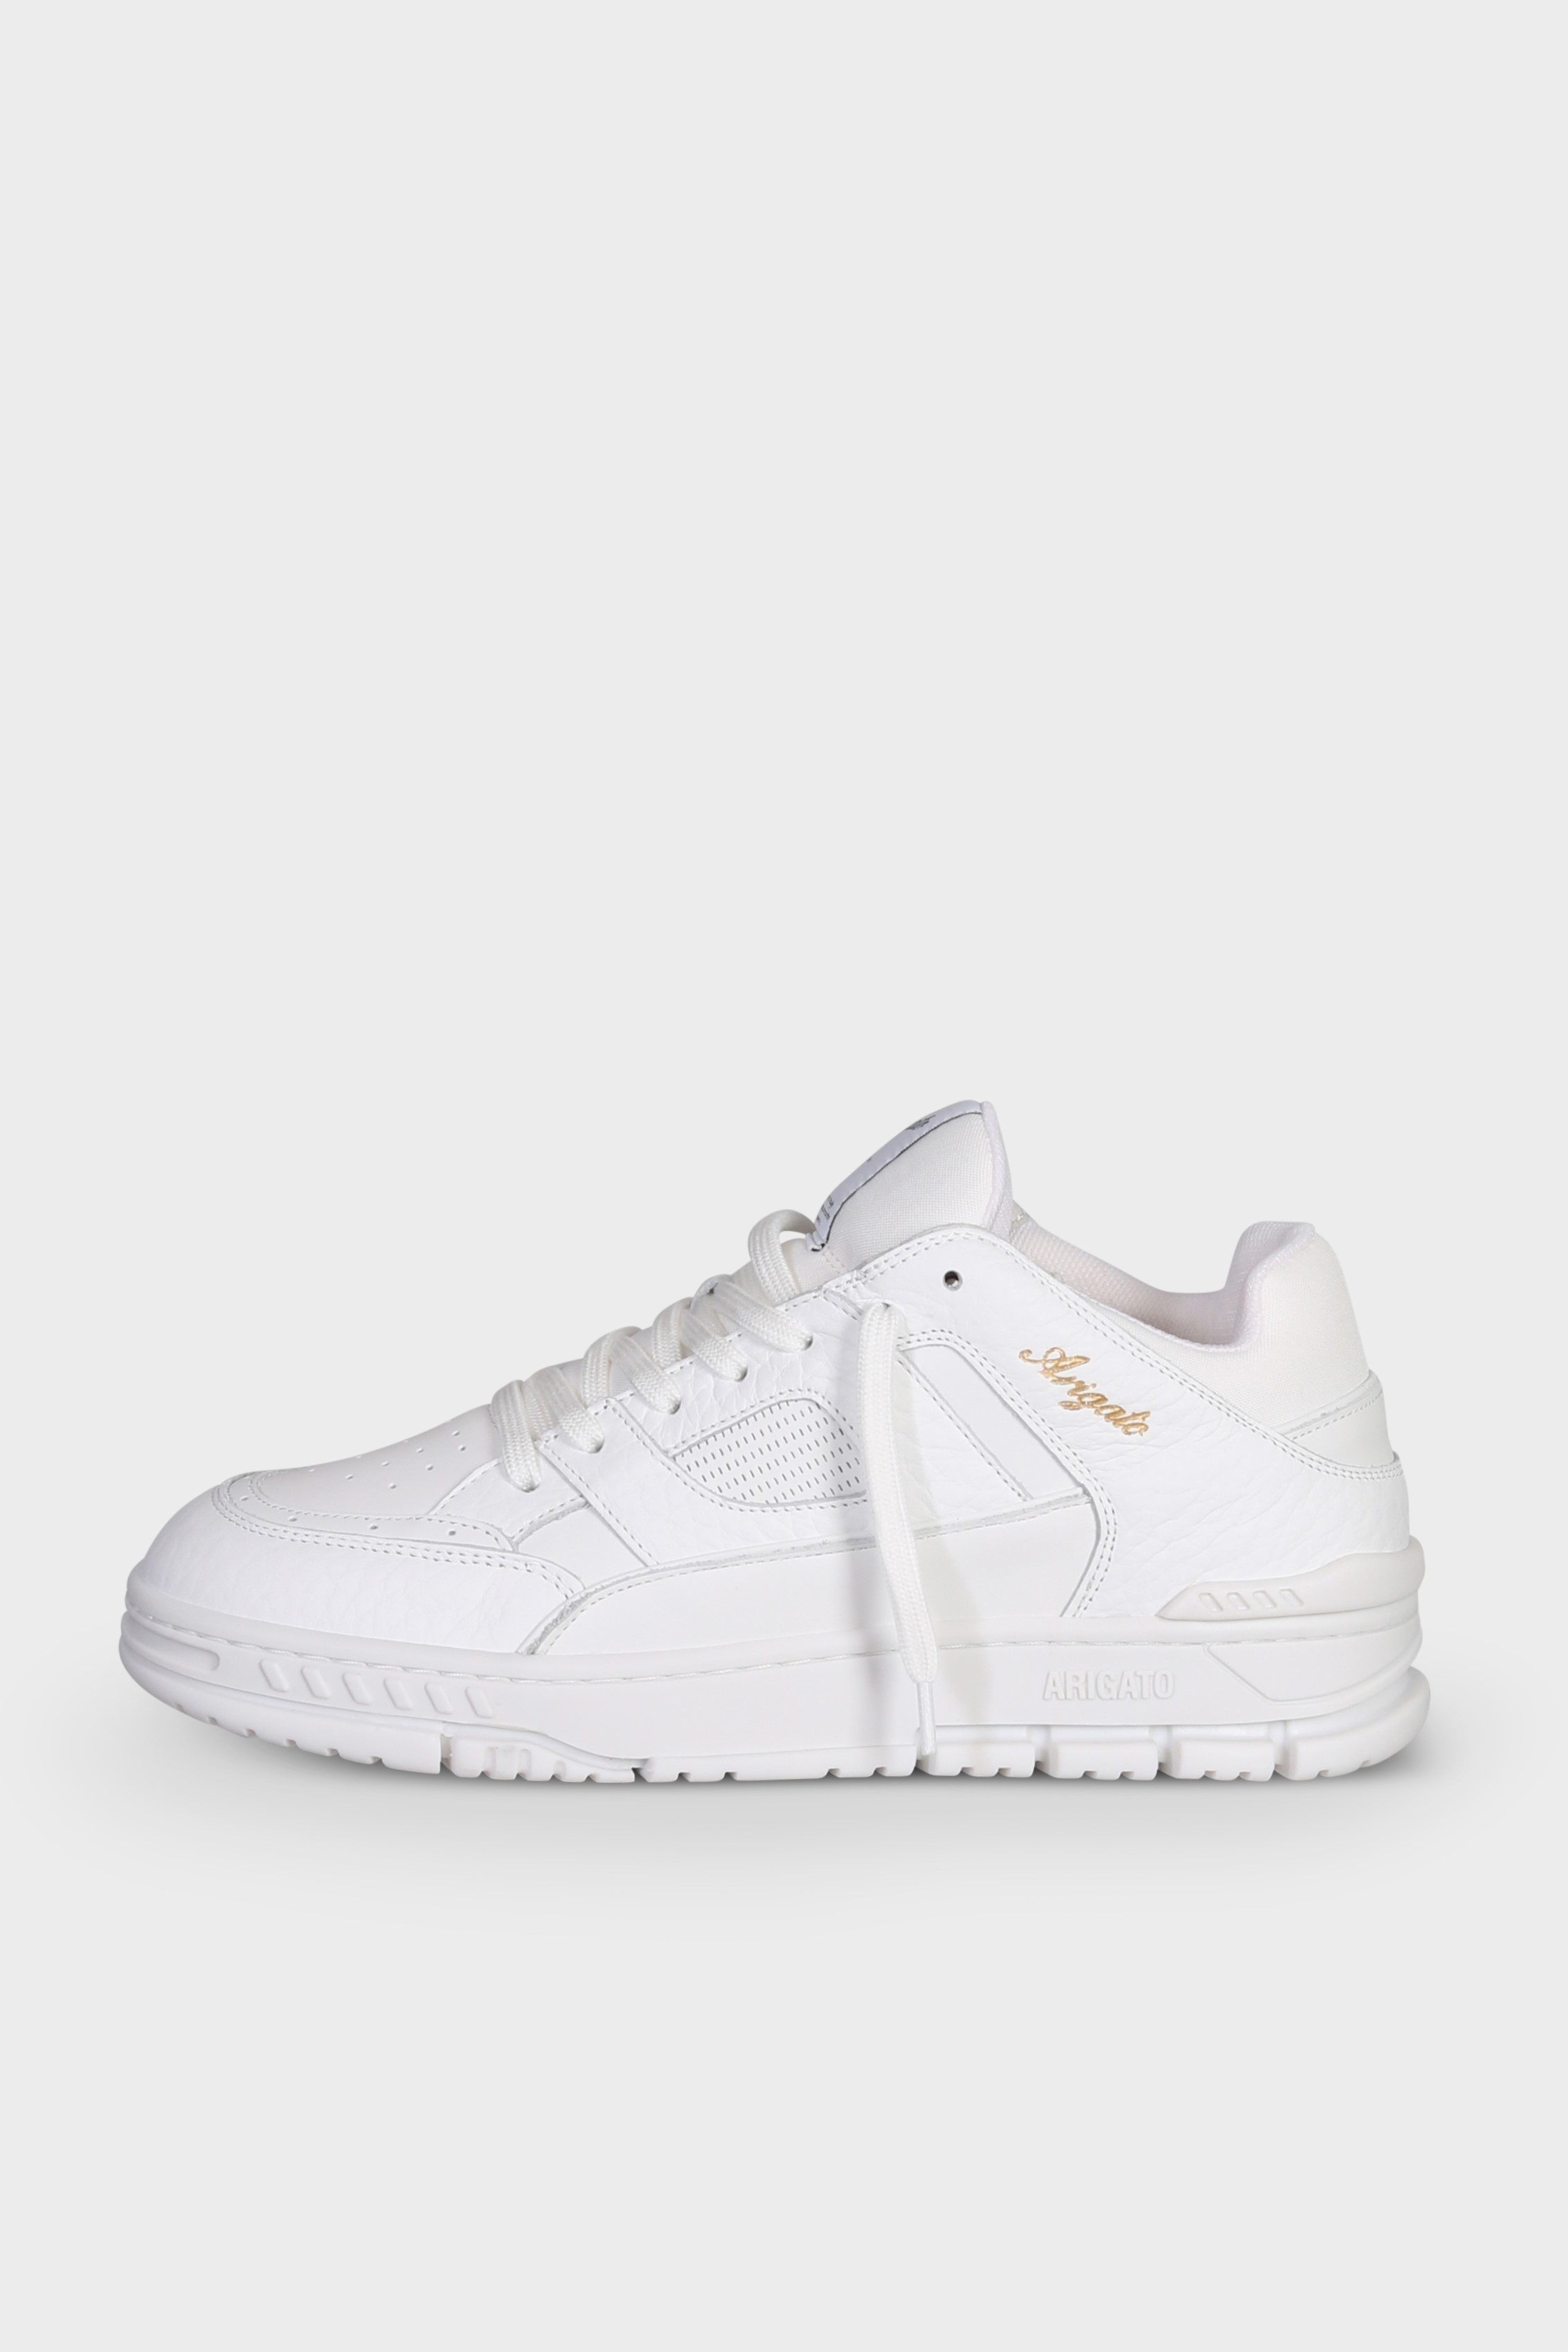 AXEL ARIGATO Area Lo Sneaker in White/White 41